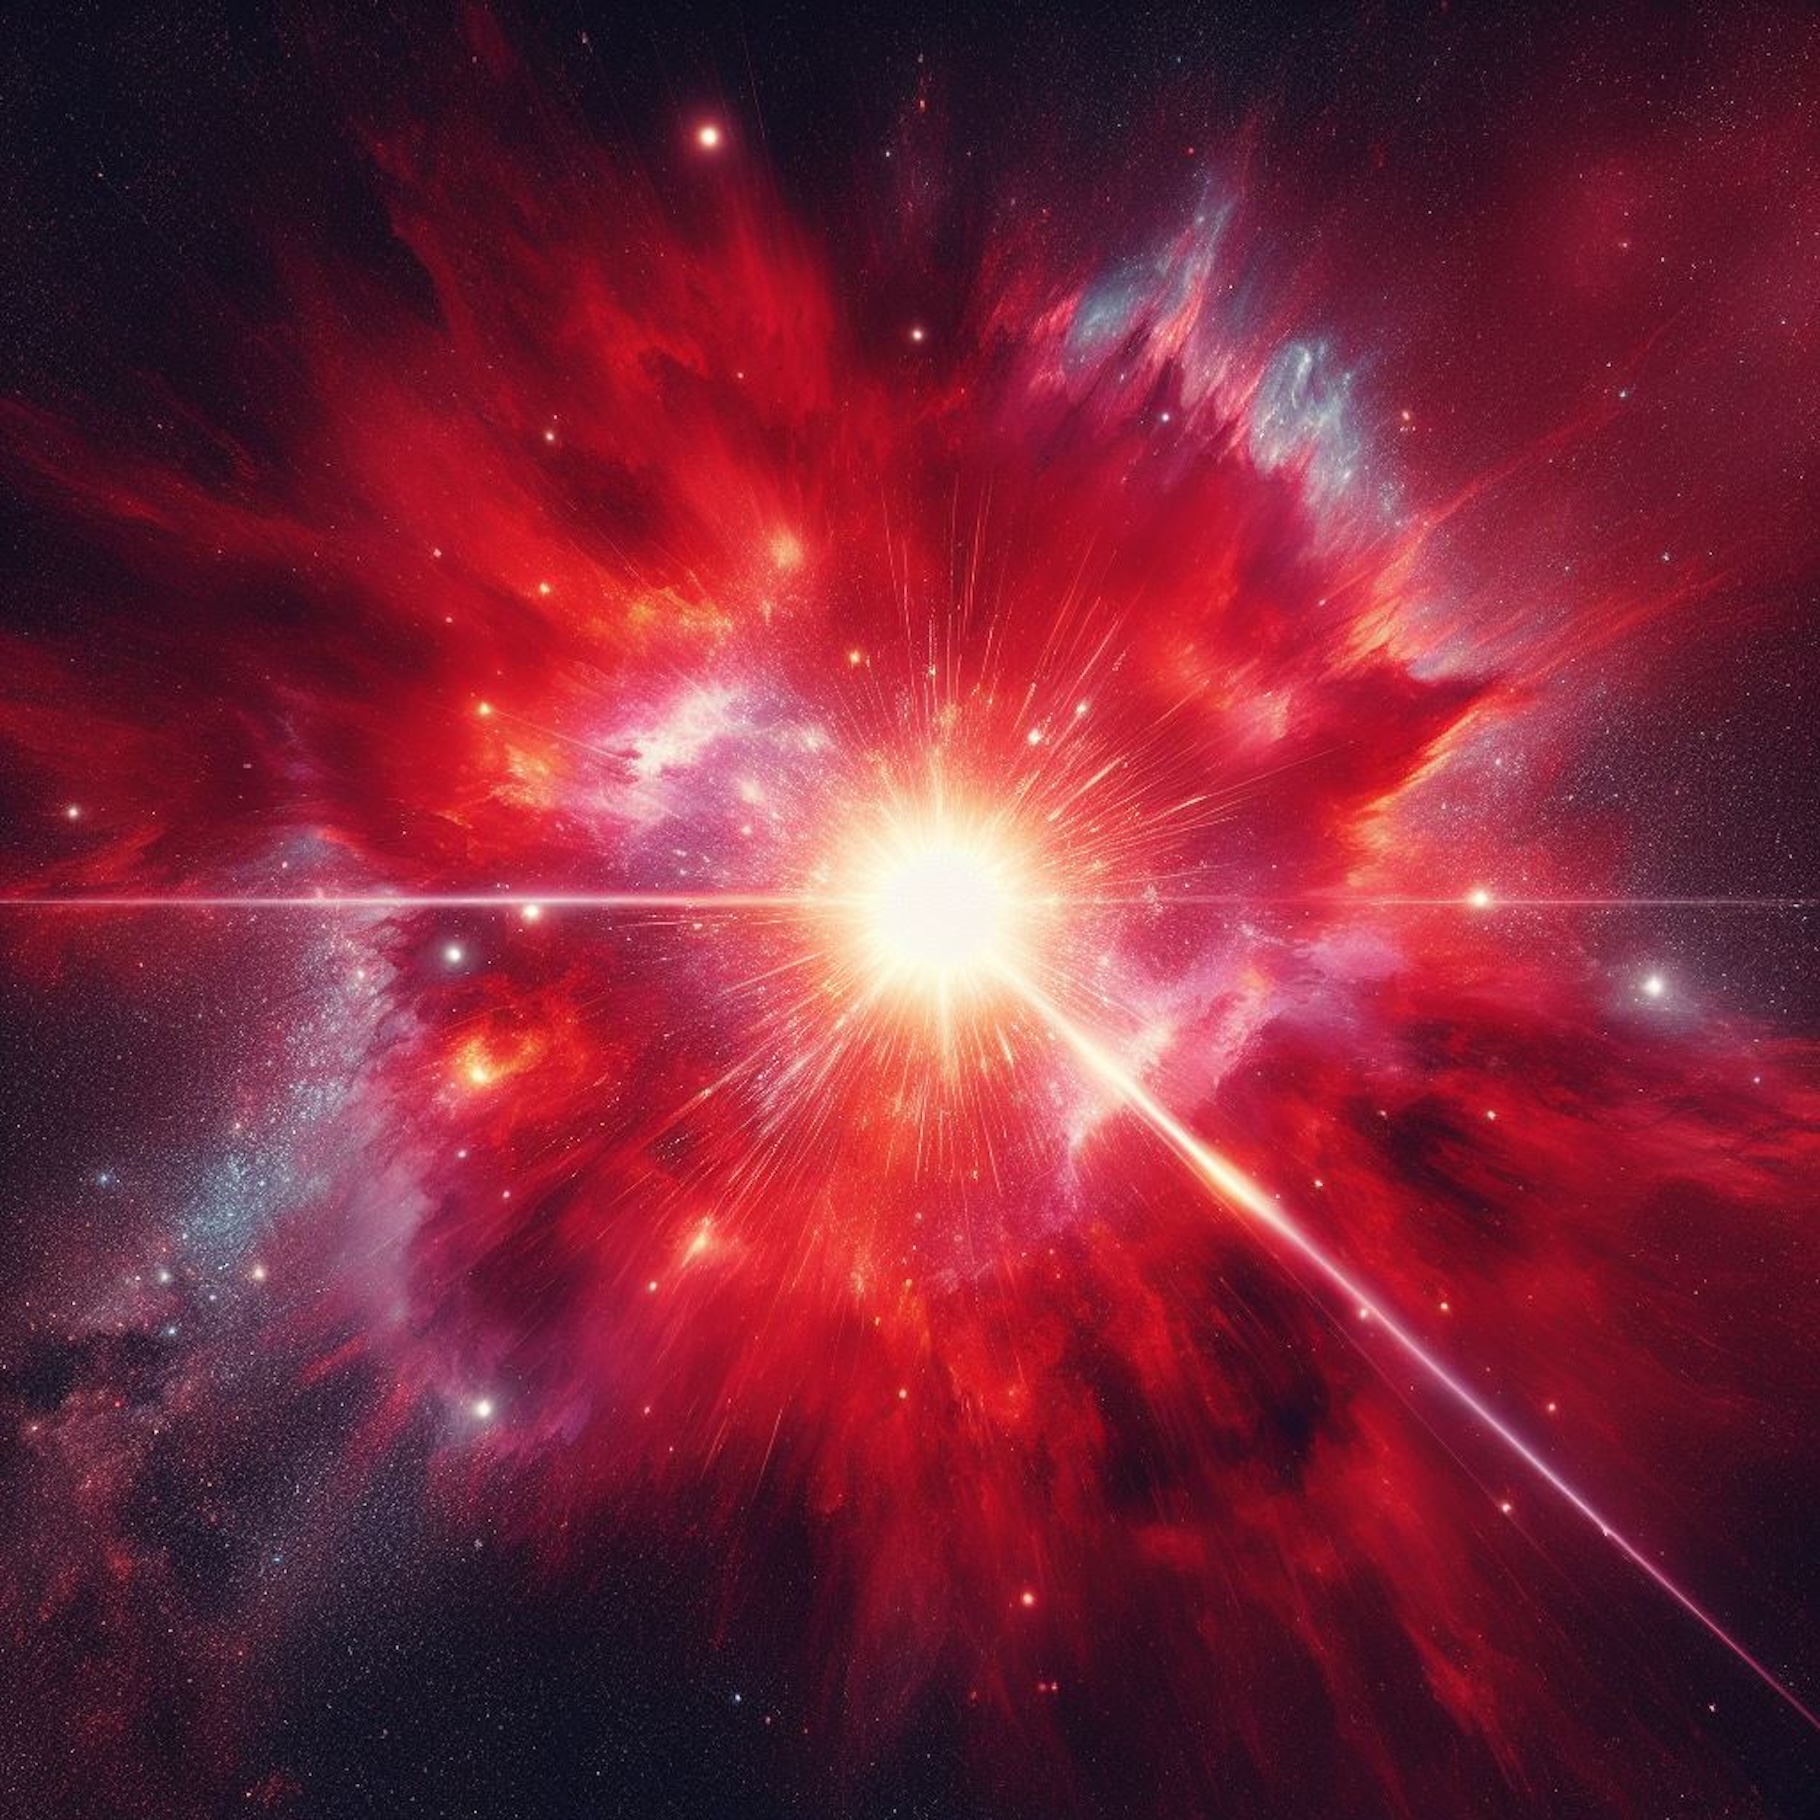 Considérant des hypothèses différentes de leurs collègues, des astronomes estiment aujourd’hui que Bételgeuse a peut-être déjà explosé en supernova. © Microscoft Bing, Créateur d’image DALL-E 3